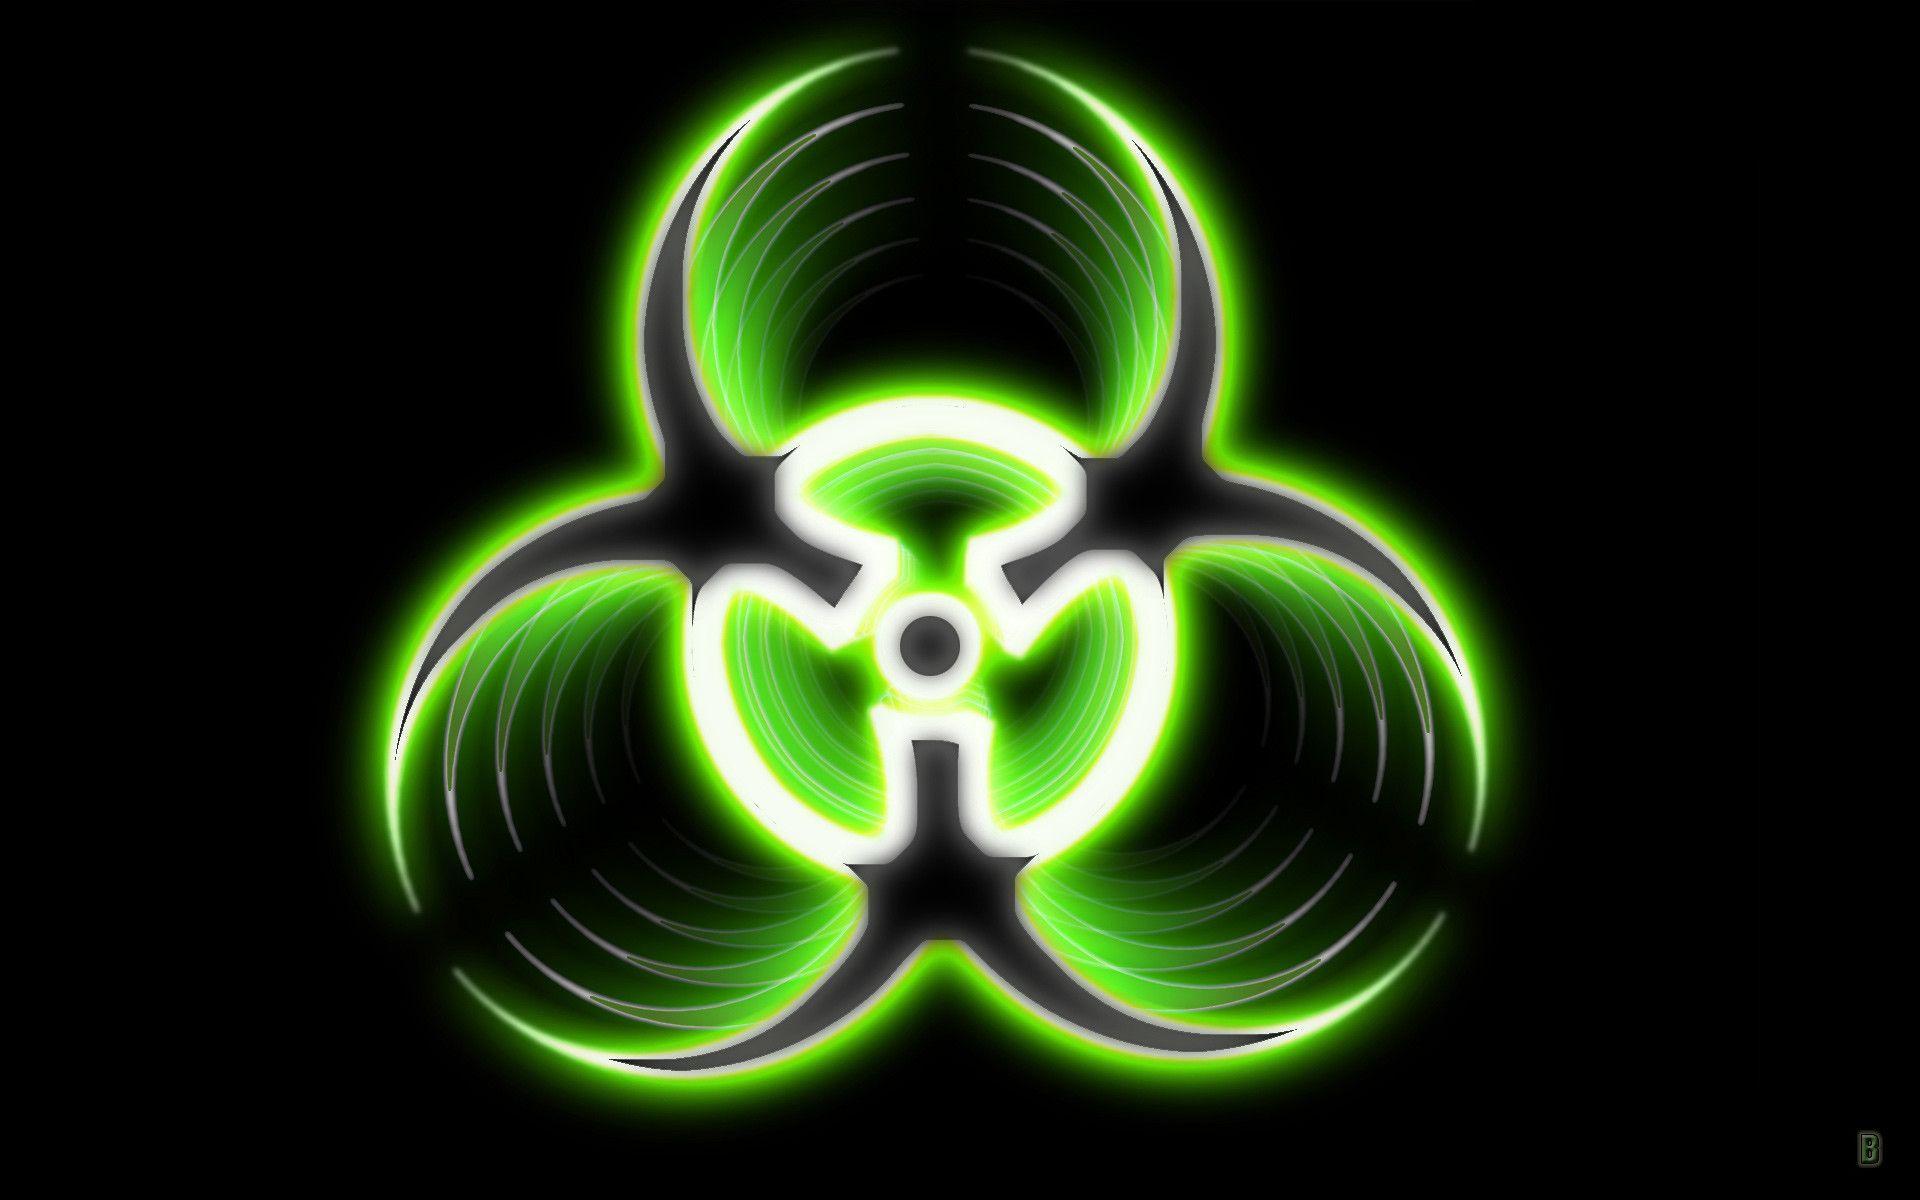 Cool Radioactive Logo - Radioactive Symbol Wallpaper